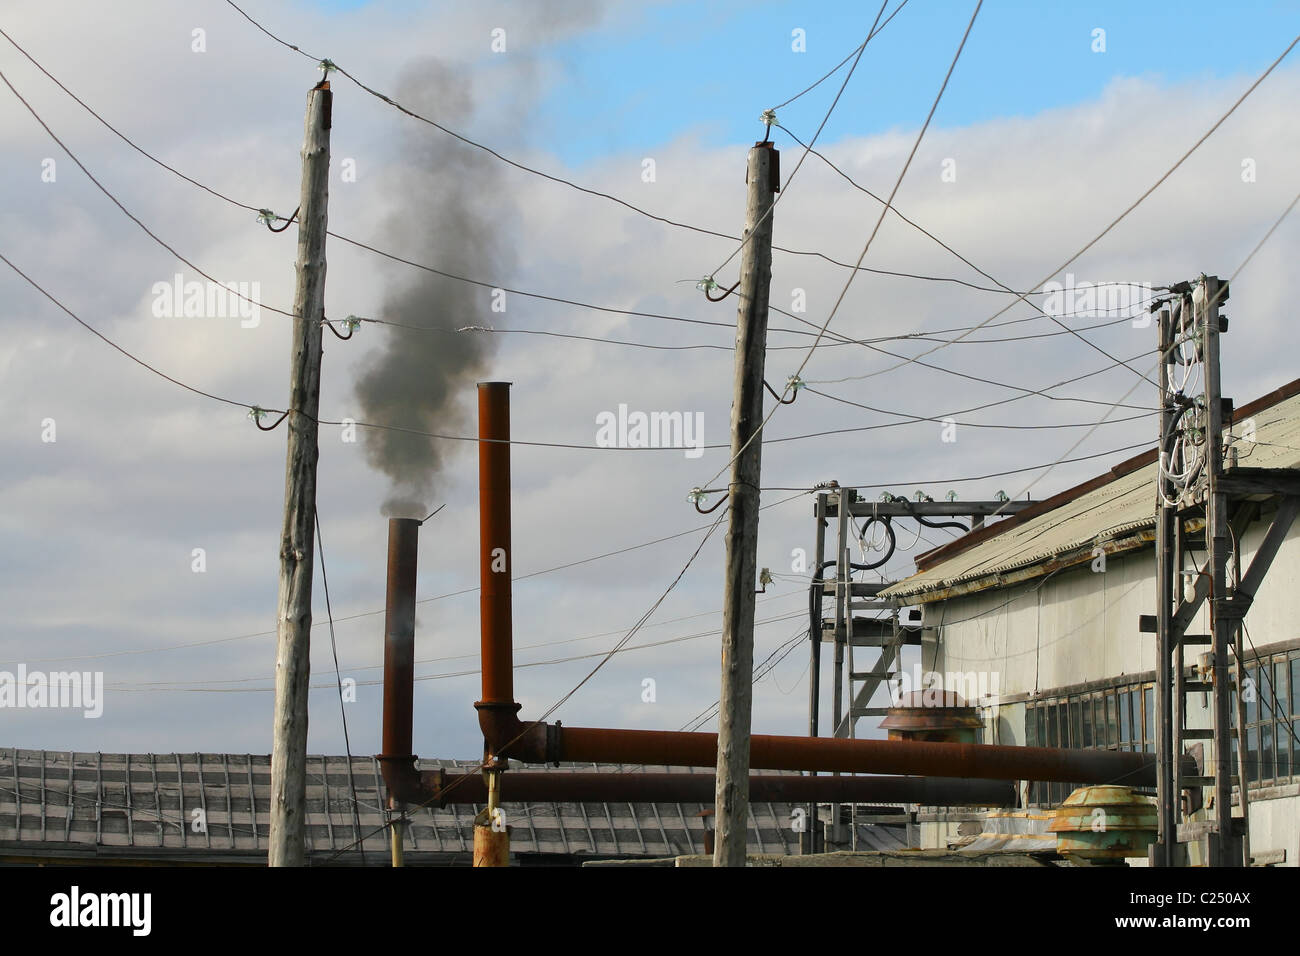 Schwarzer Rauch aus dem Auspuff eines stationären Diesel-Generators. Siedlung Mys-Stein, Jamal-Halbinsel, Russland Stockfoto